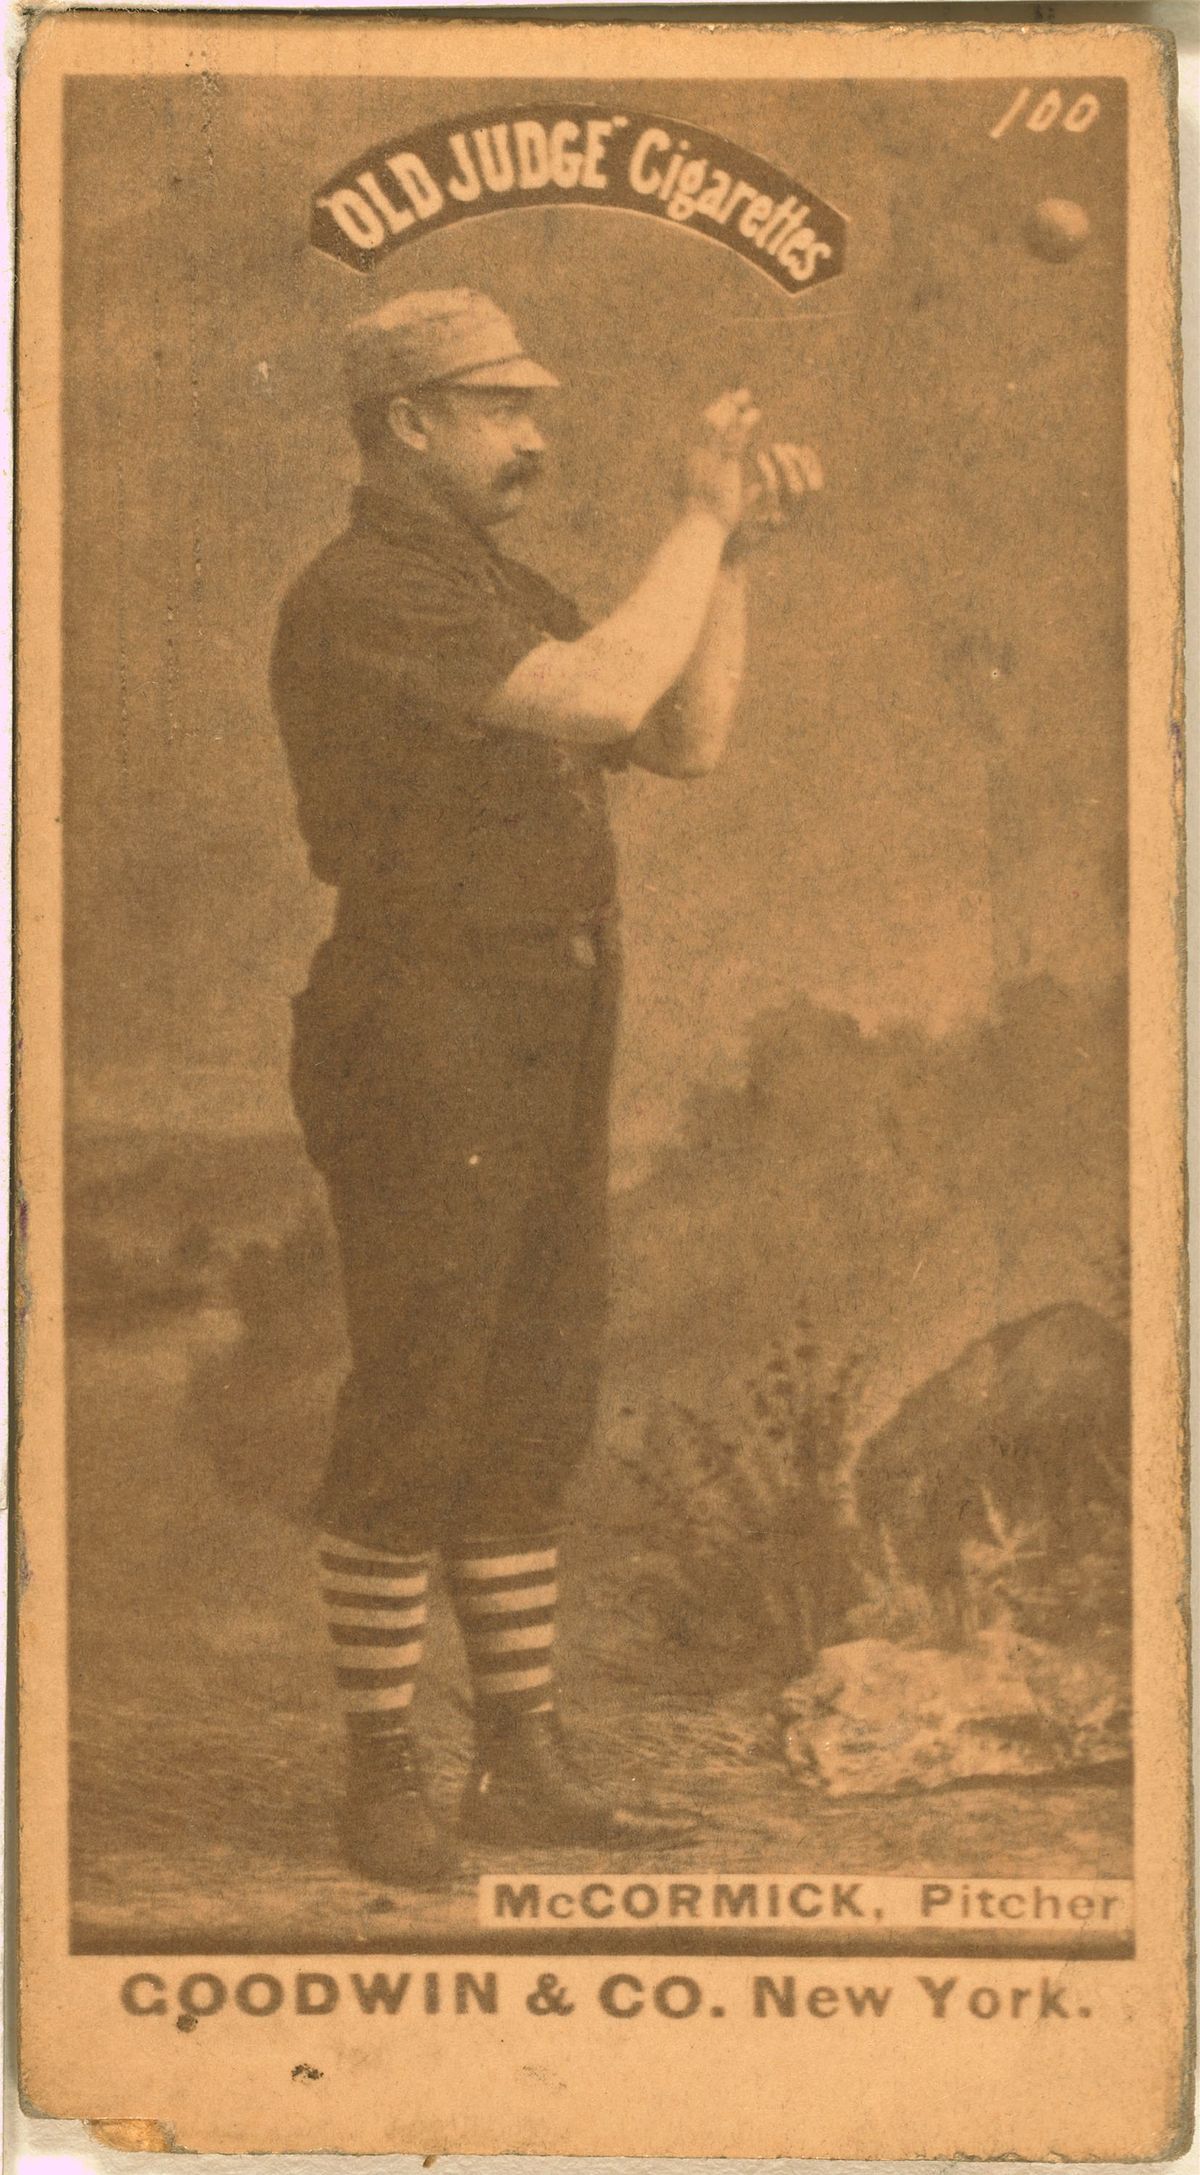 1903 World Series - Wikipedia